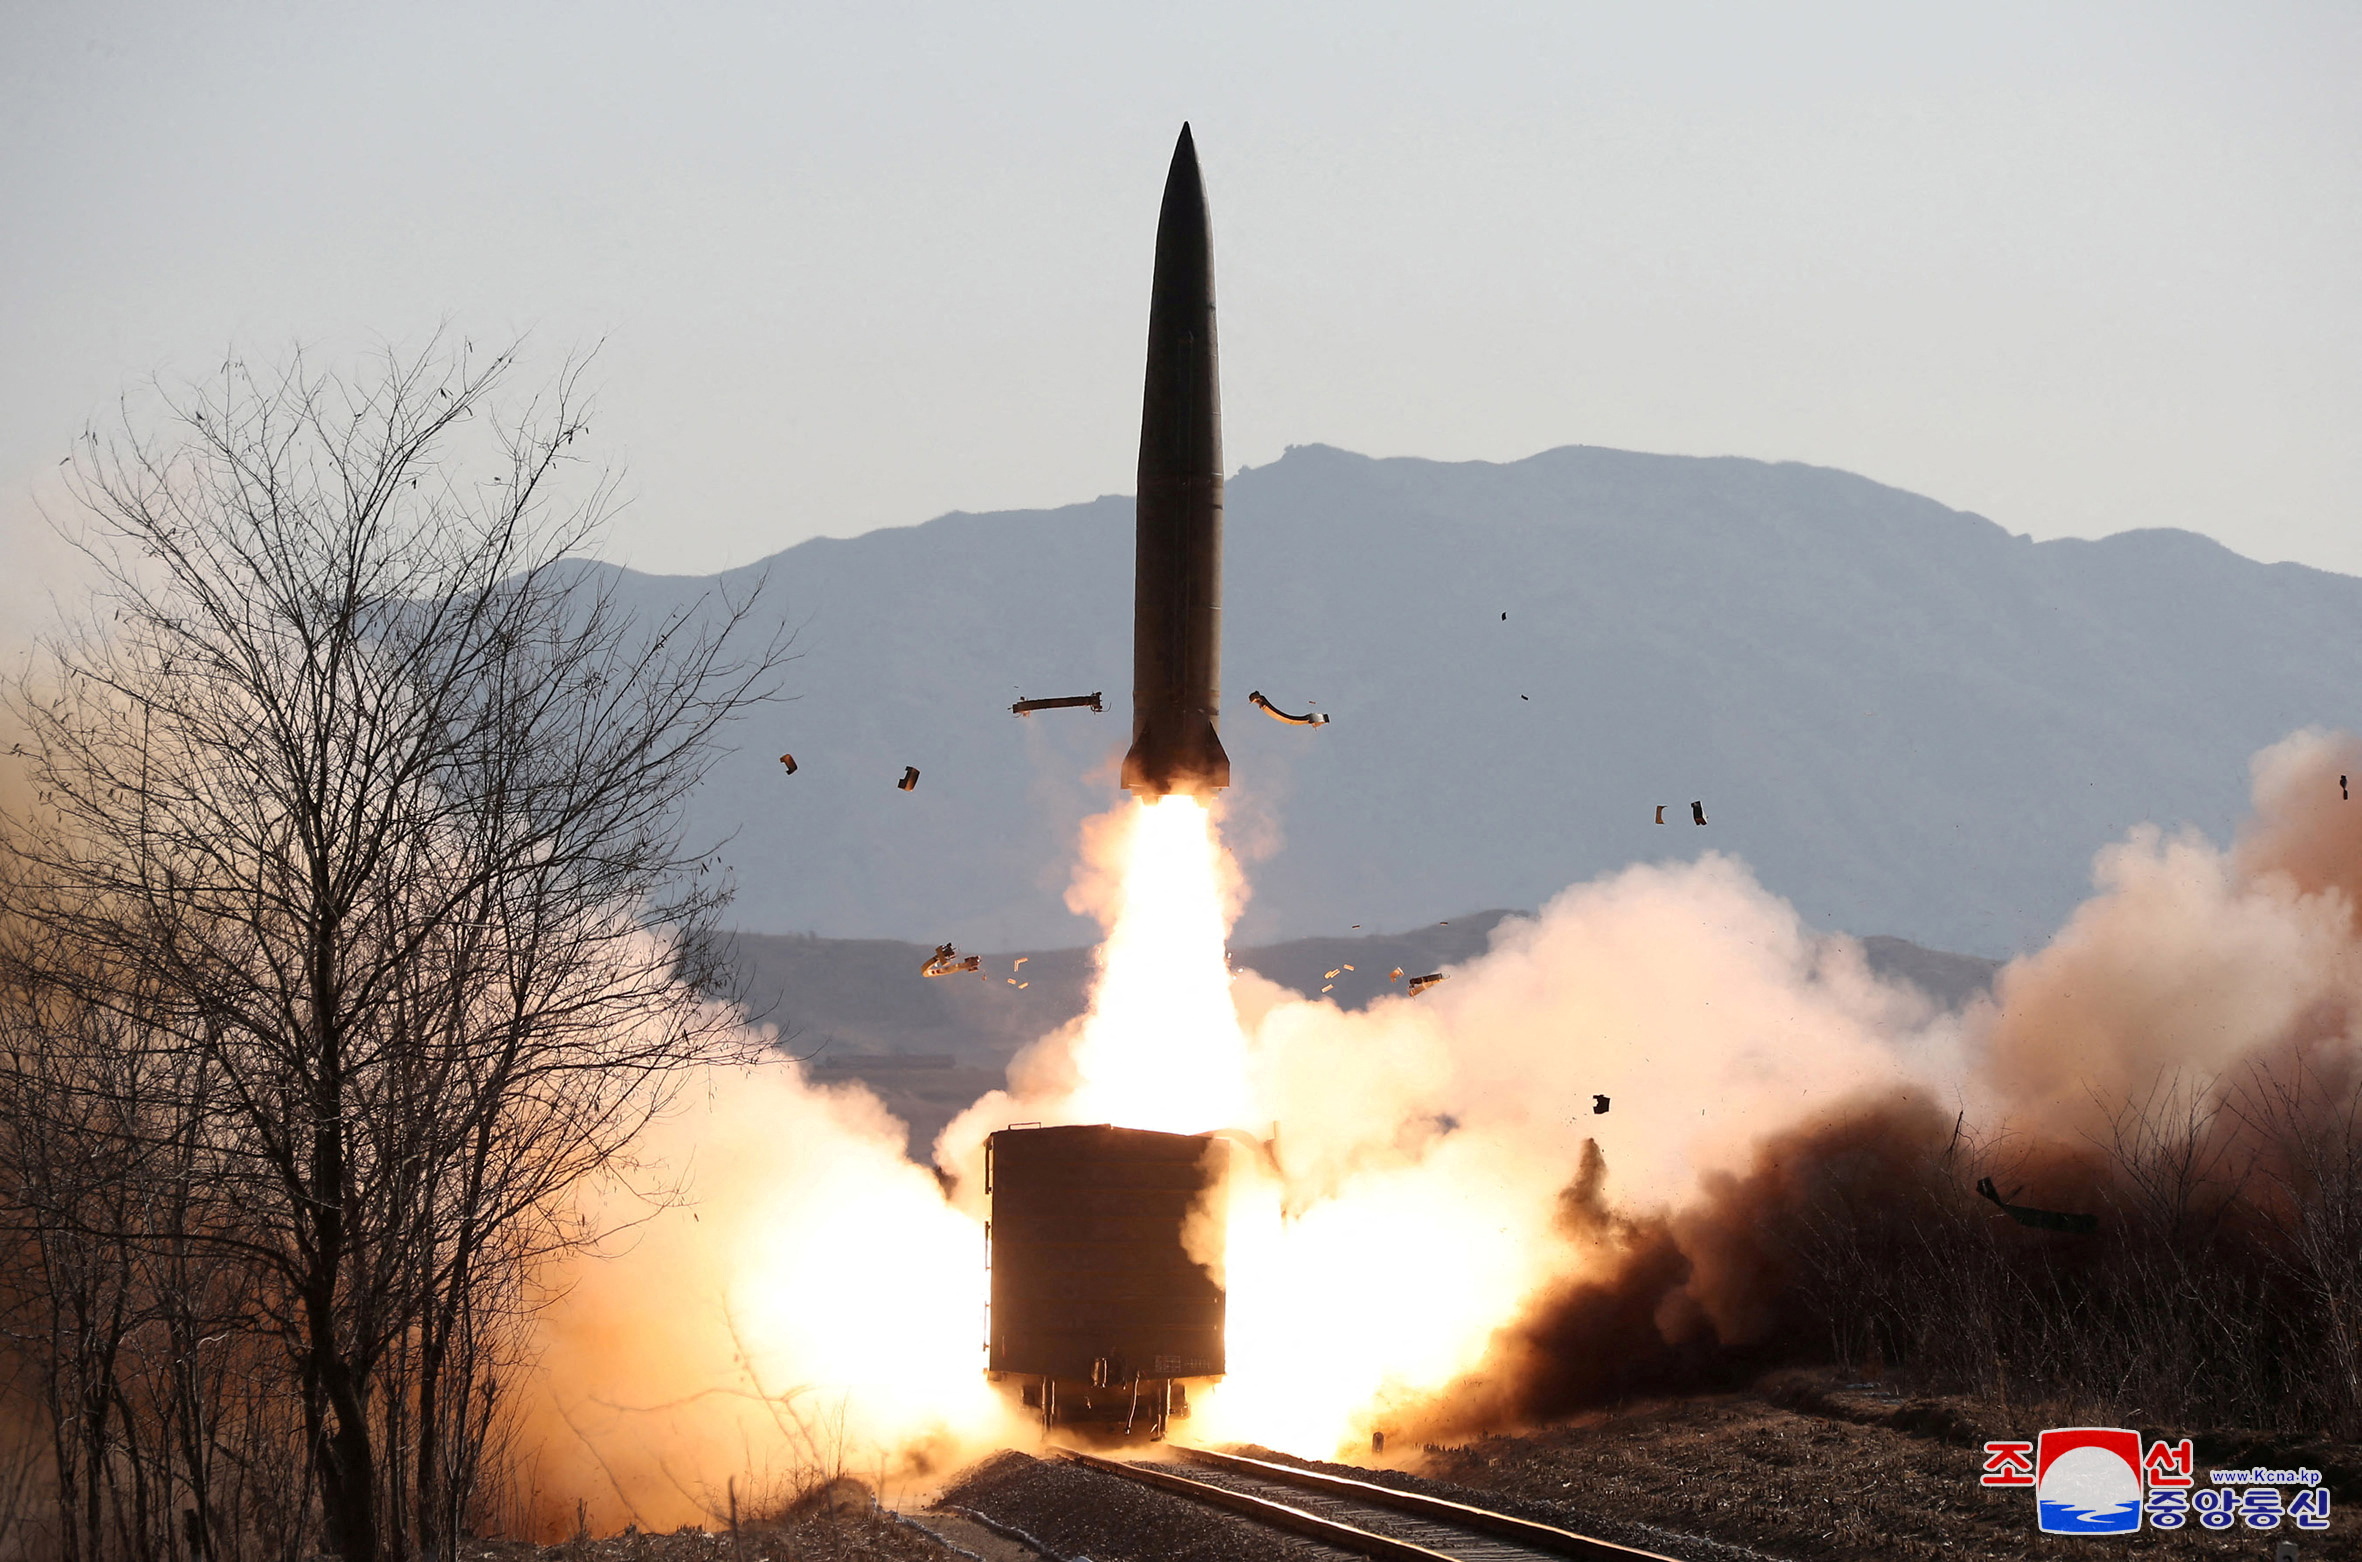 Η Βόρεια Κορέα χρησιμοποίησε εκτοξευτήρα πολλαπλών πυραύλων, δηλώνει η Σεούλ